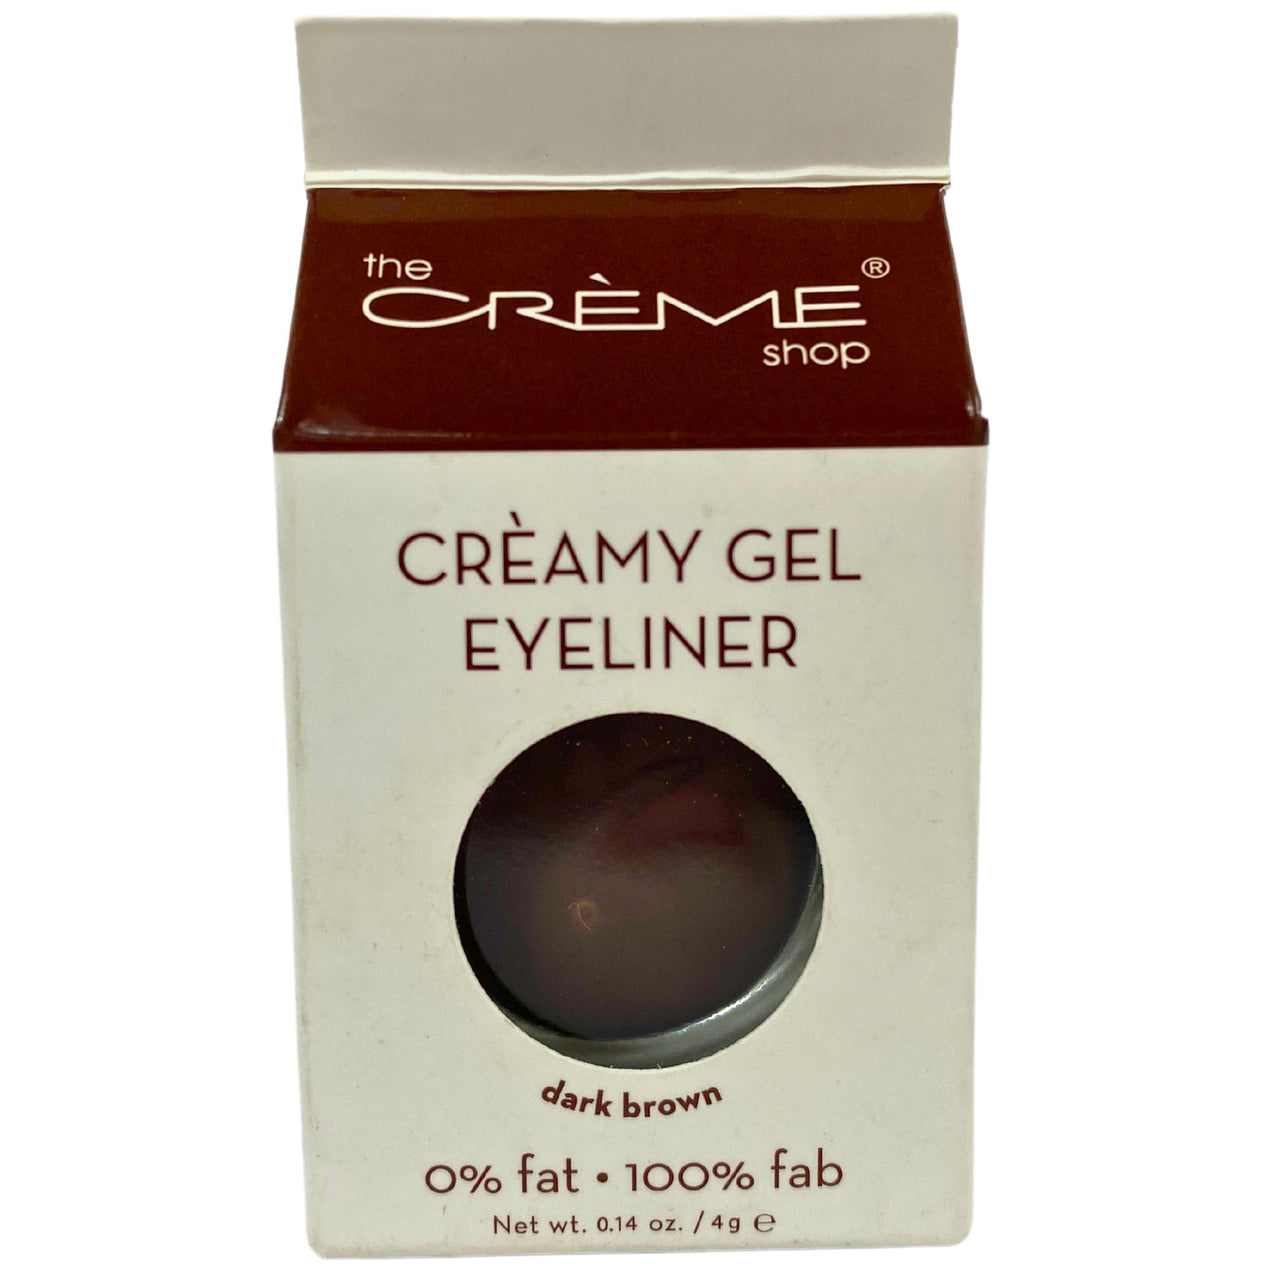 The Creme Shop Creamy Gel Eyeliner Dark Brown 